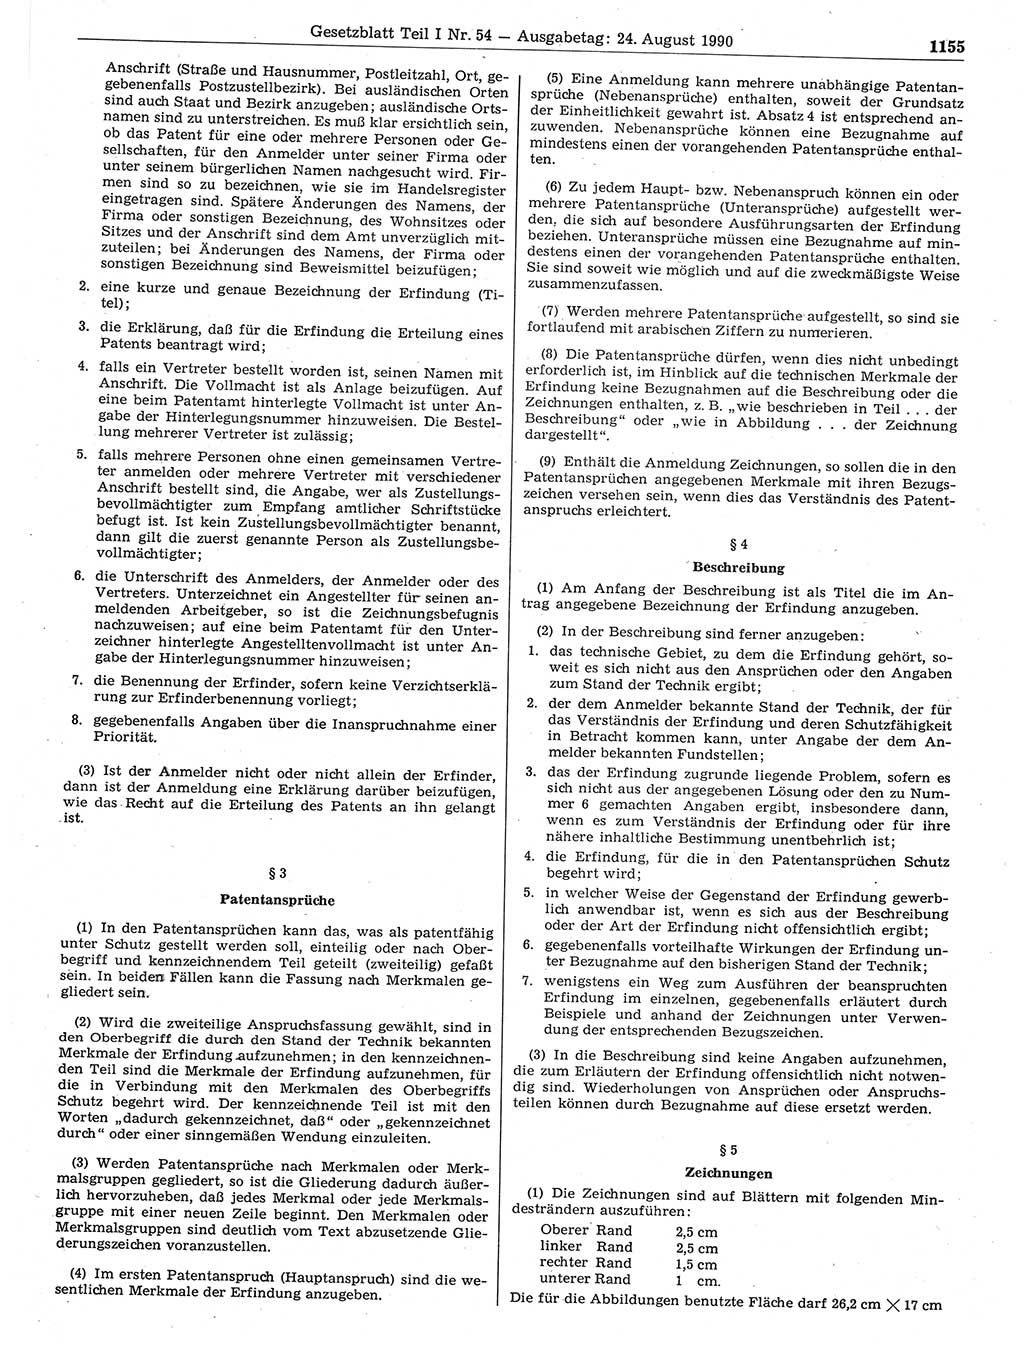 Gesetzblatt (GBl.) der Deutschen Demokratischen Republik (DDR) Teil Ⅰ 1990, Seite 1155 (GBl. DDR Ⅰ 1990, S. 1155)